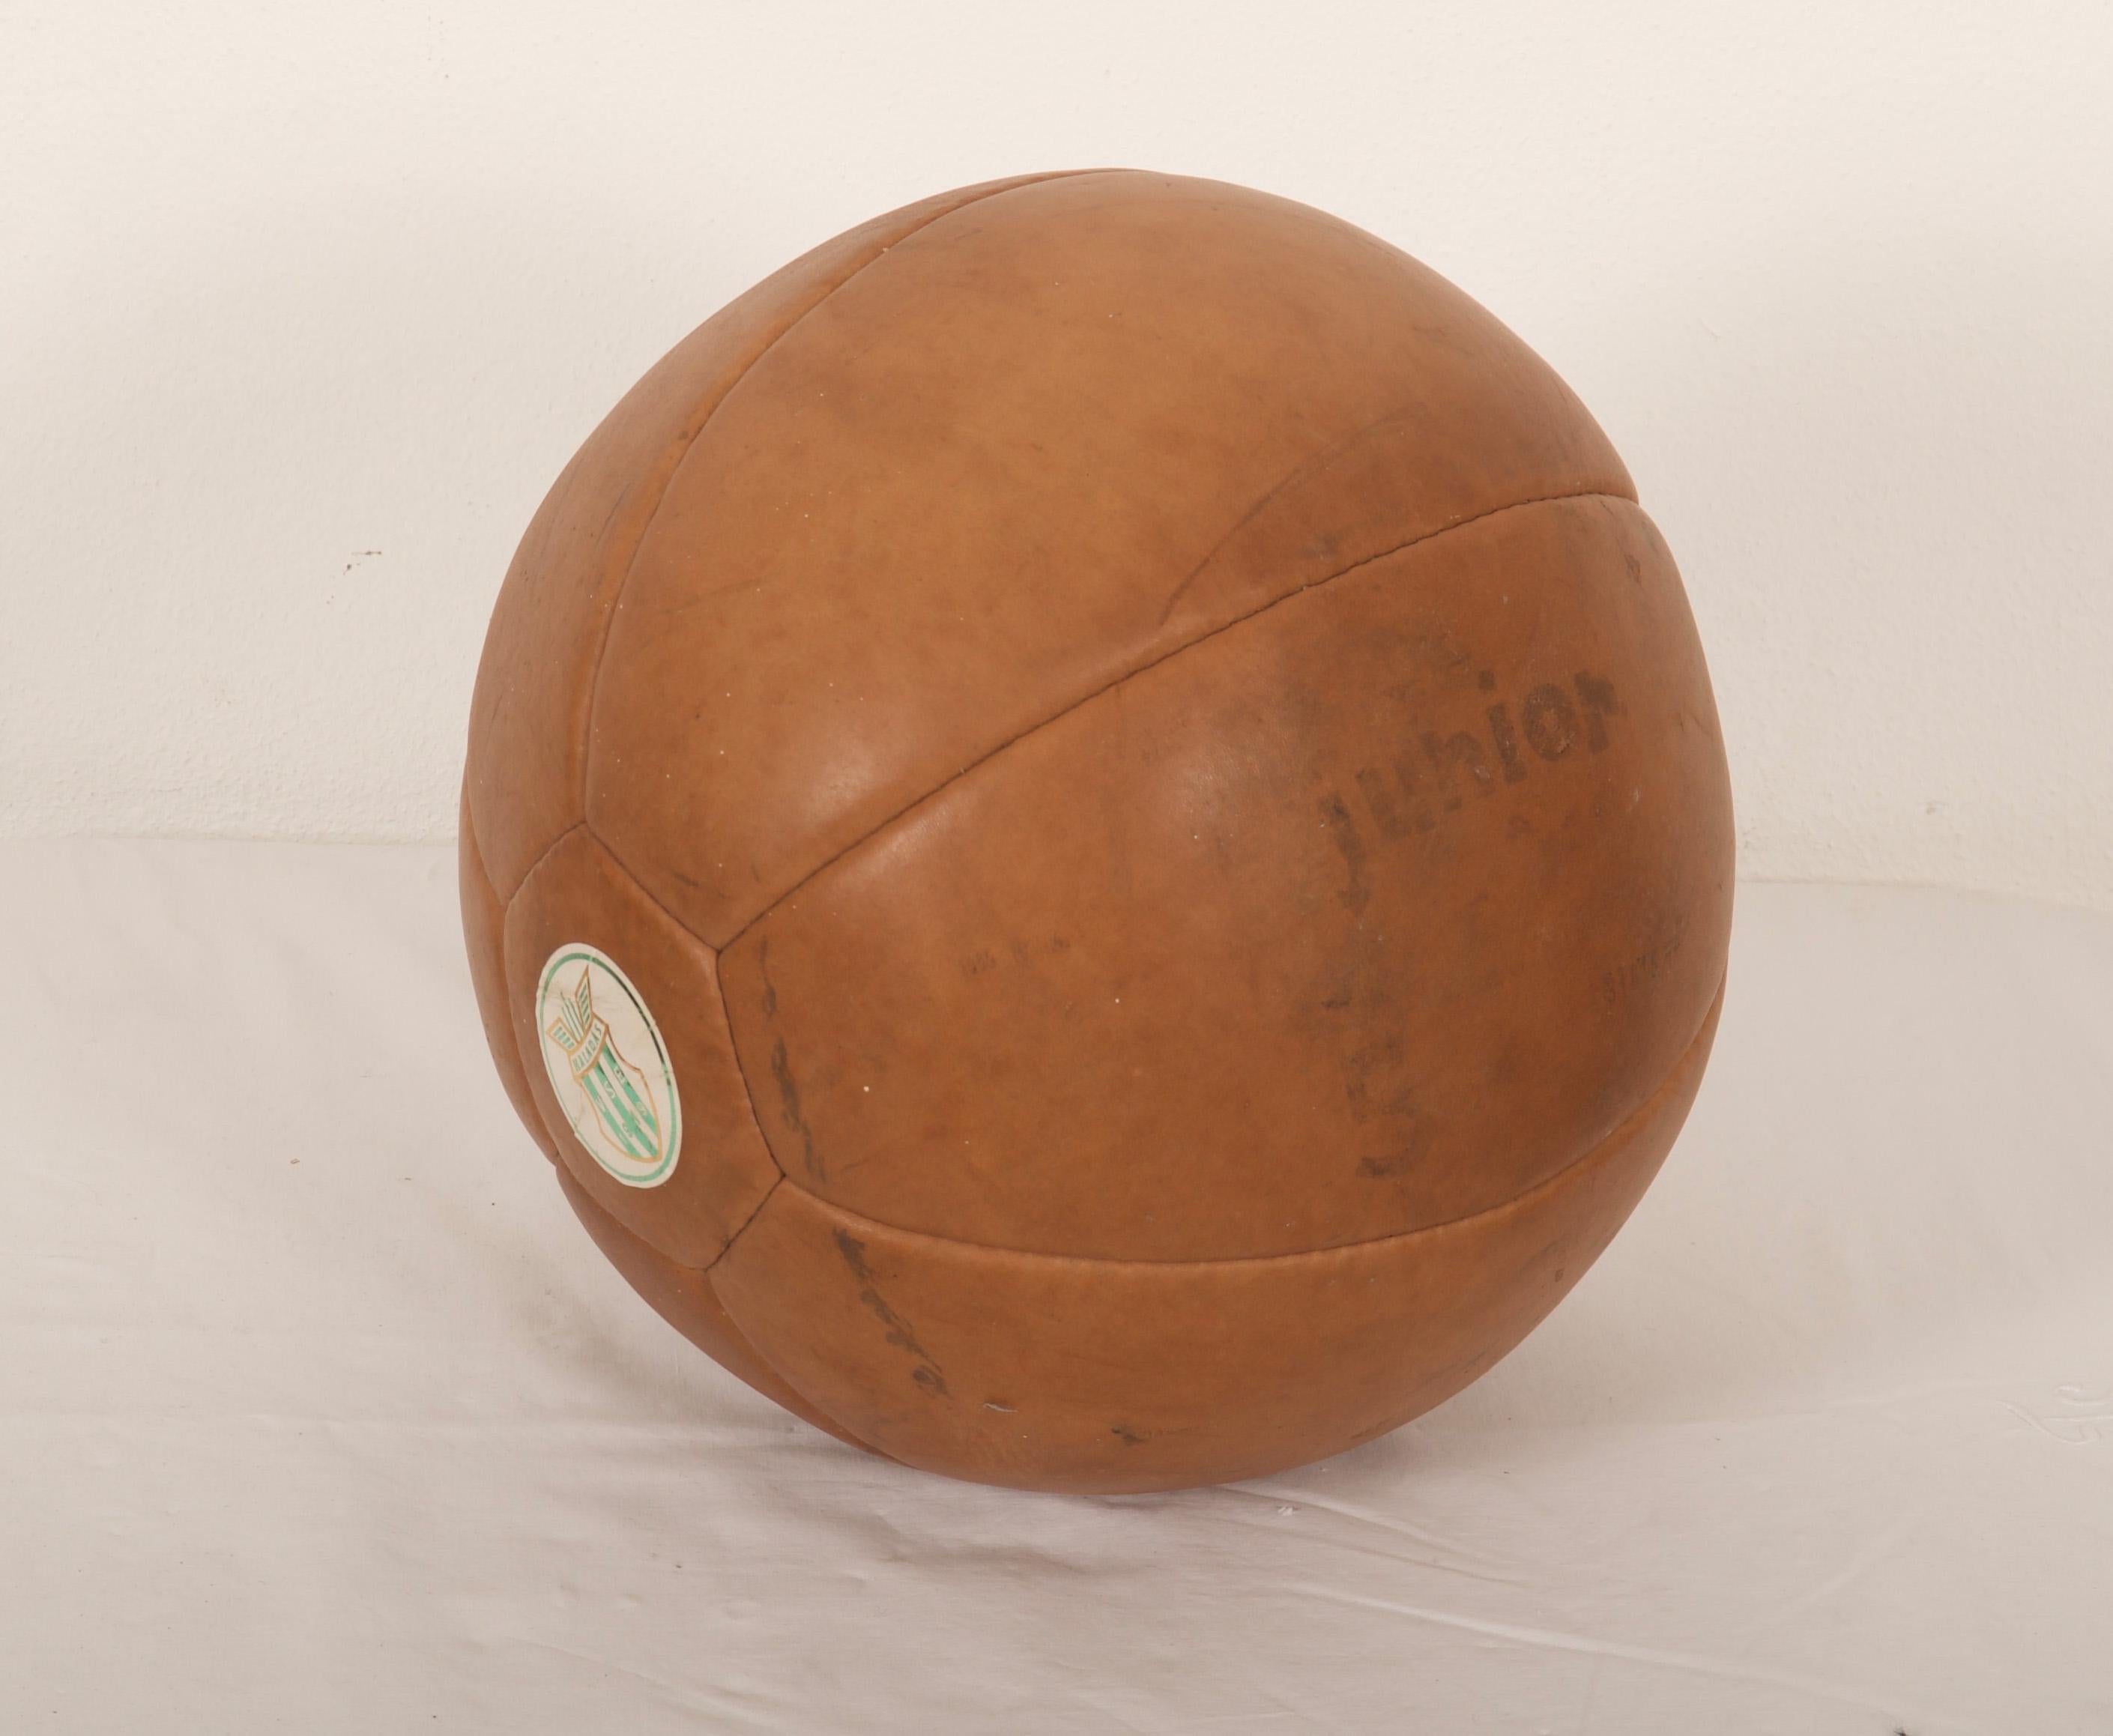 Original patinierter Leder-Medizinball mit eingebranntem Herstellerzeichen 